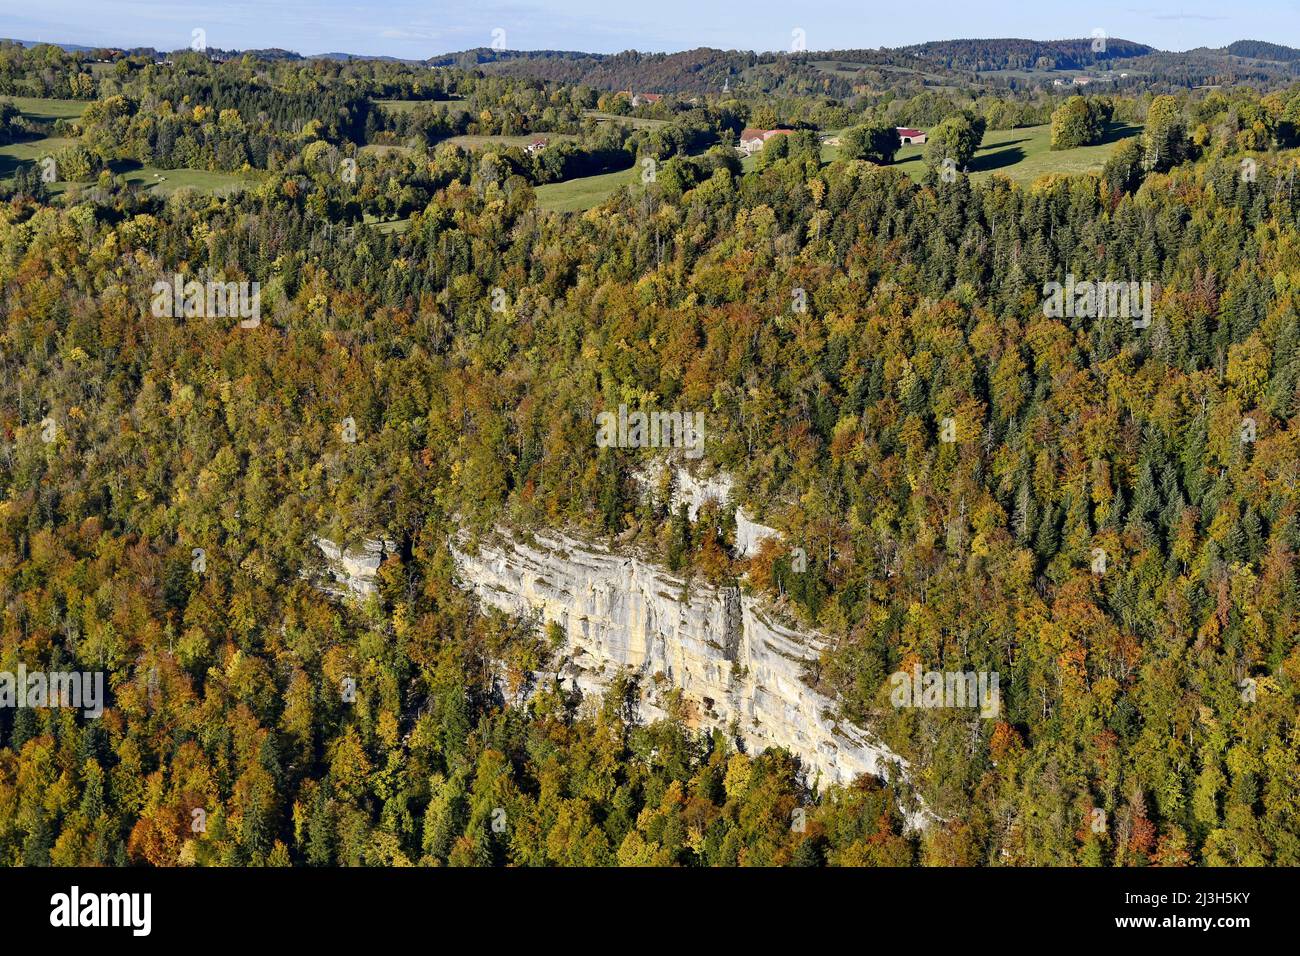 France, Doubs, Dessoubre valley, Cirque de Consolation, cliffs, autumn Stock Photo